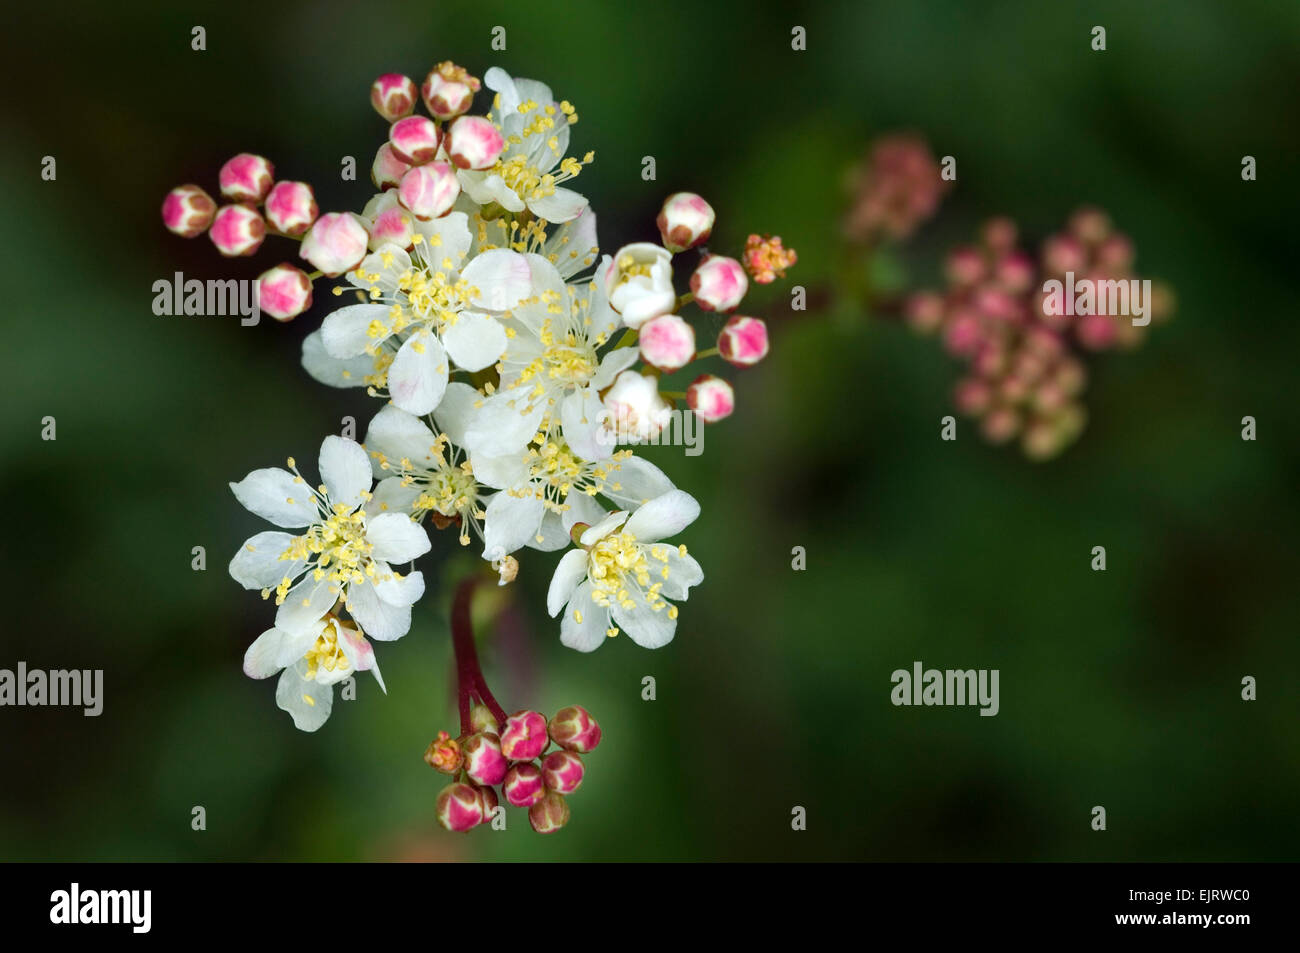 Dropwort / fern-leaf dropwort (Filipendula vulgaris / Filipendula hexapetala) in flower Stock Photo